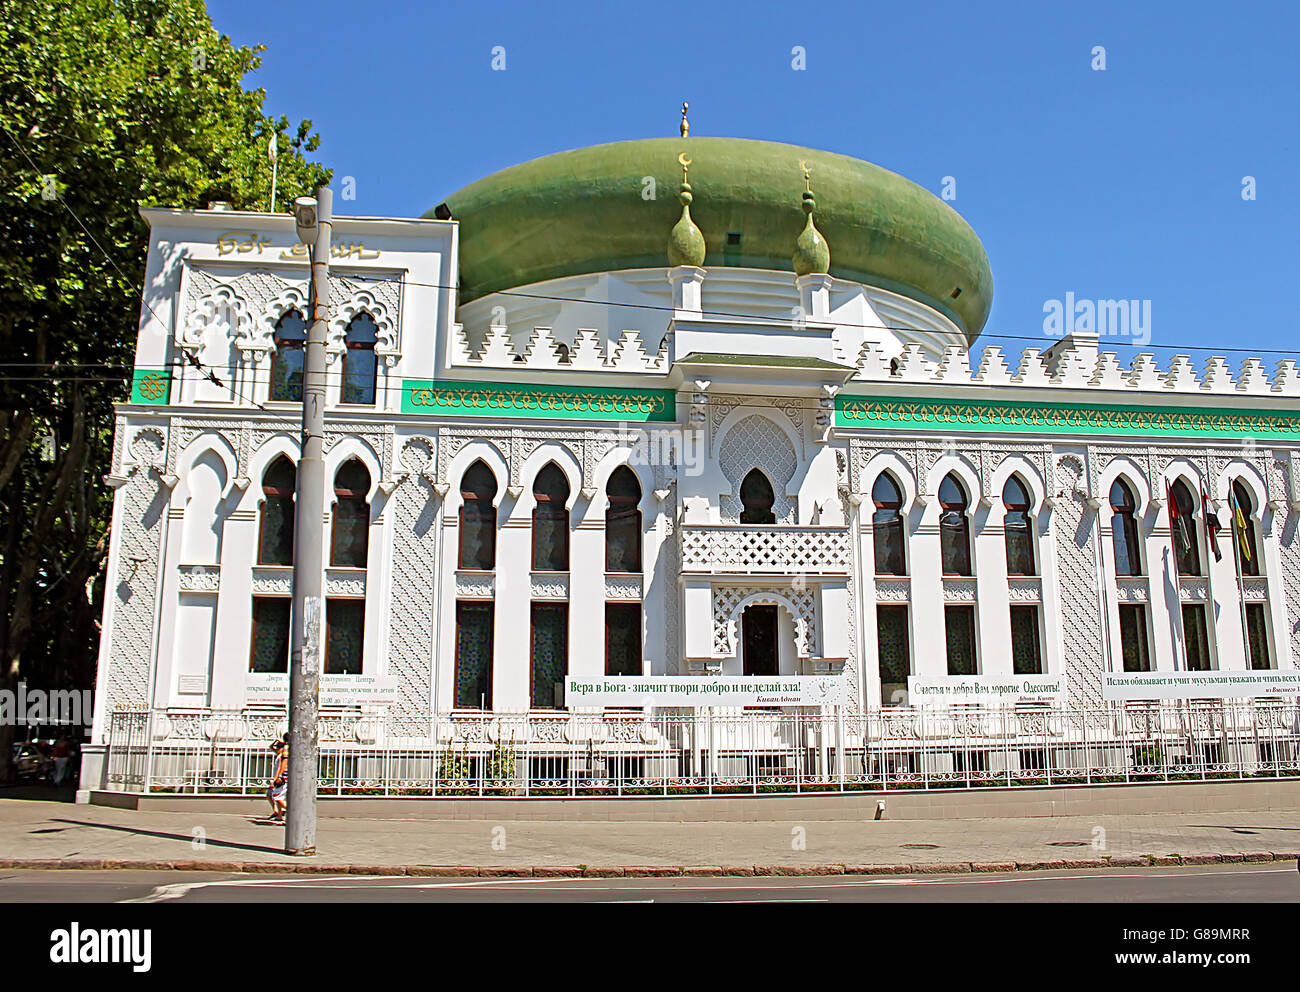 ODESSA, UKRAINE - JULY 21, 2012: The Al-Salam Mosque and Arabian Cultural Center are located in Odessa, Ukraine Stock Photo